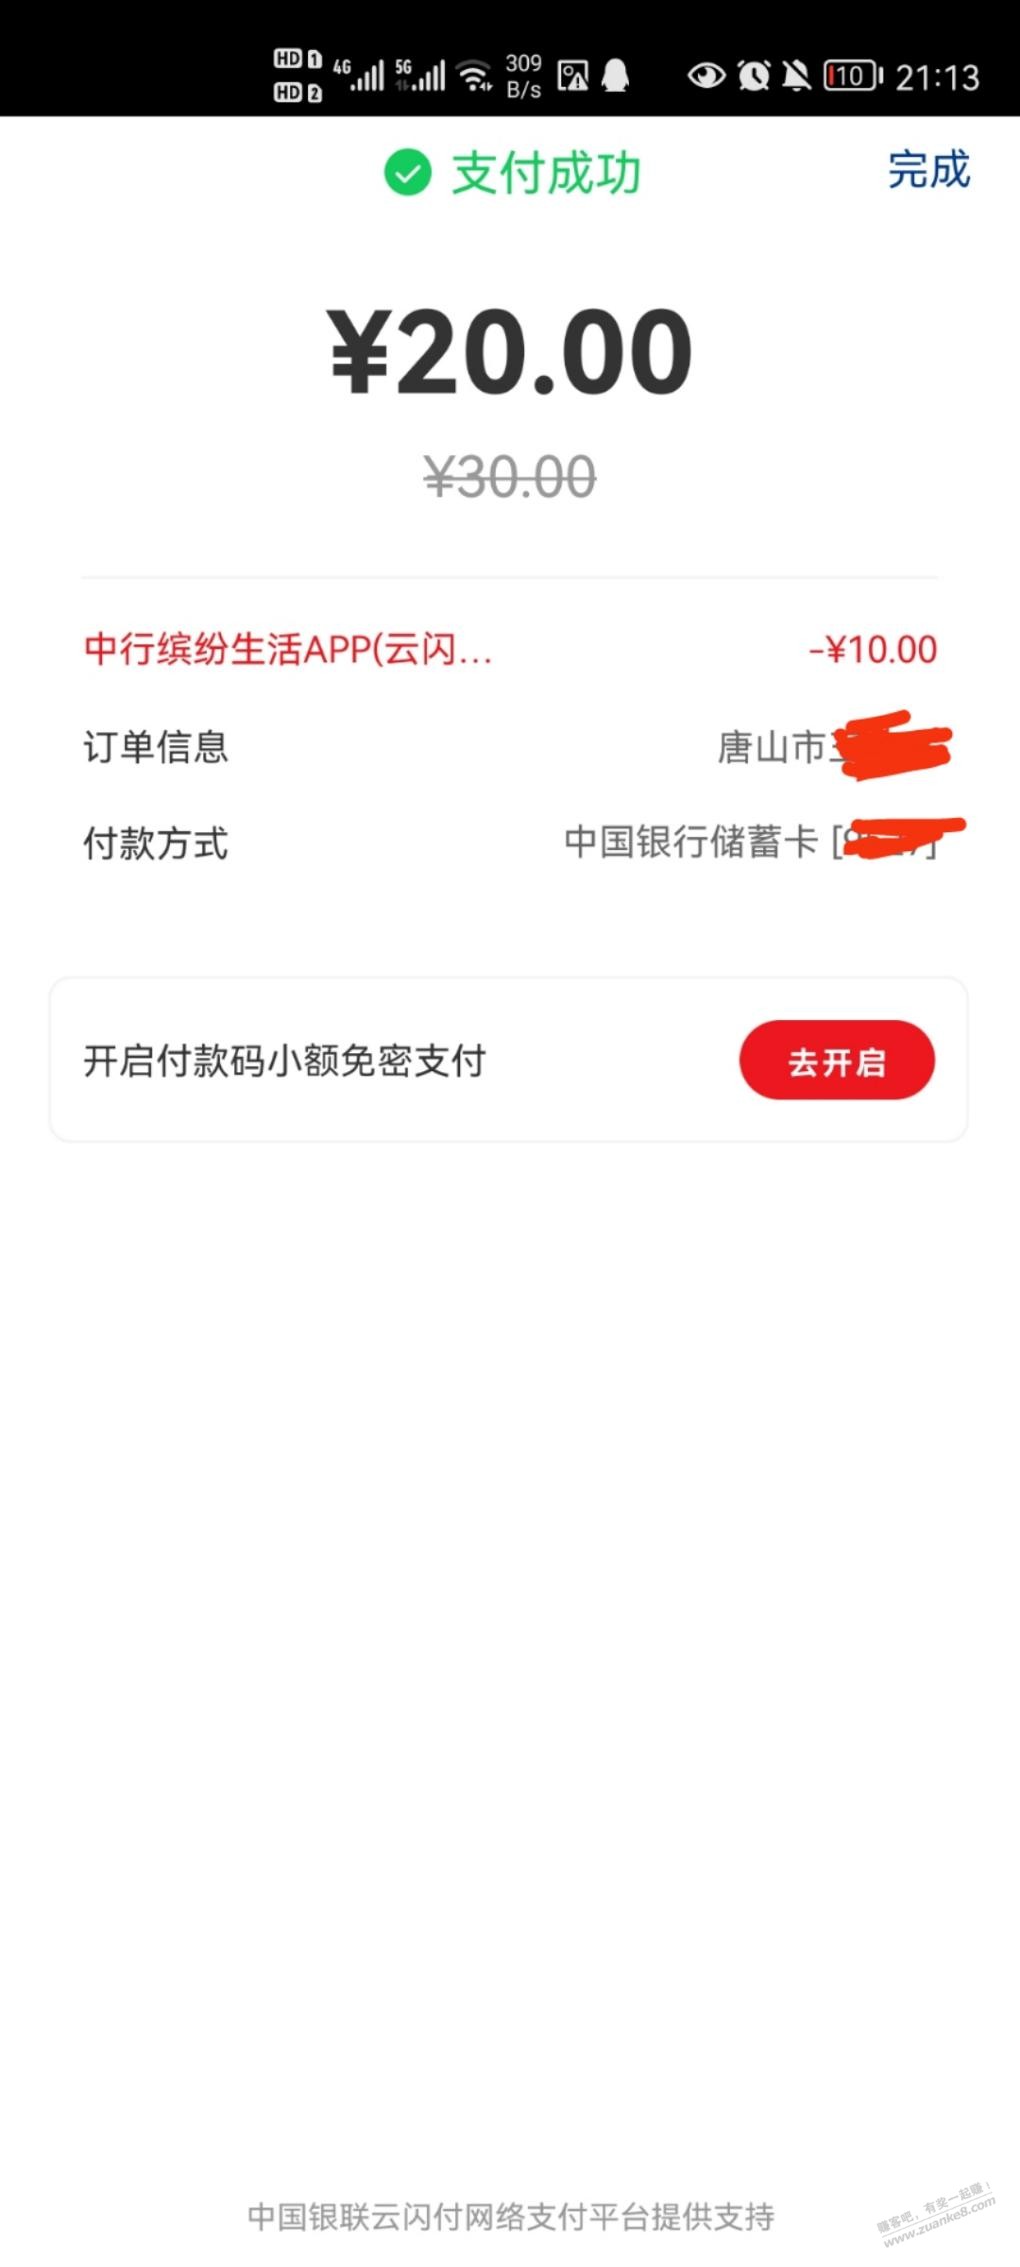 缤纷生活app 被扫30-20还有-惠小助(52huixz.com)